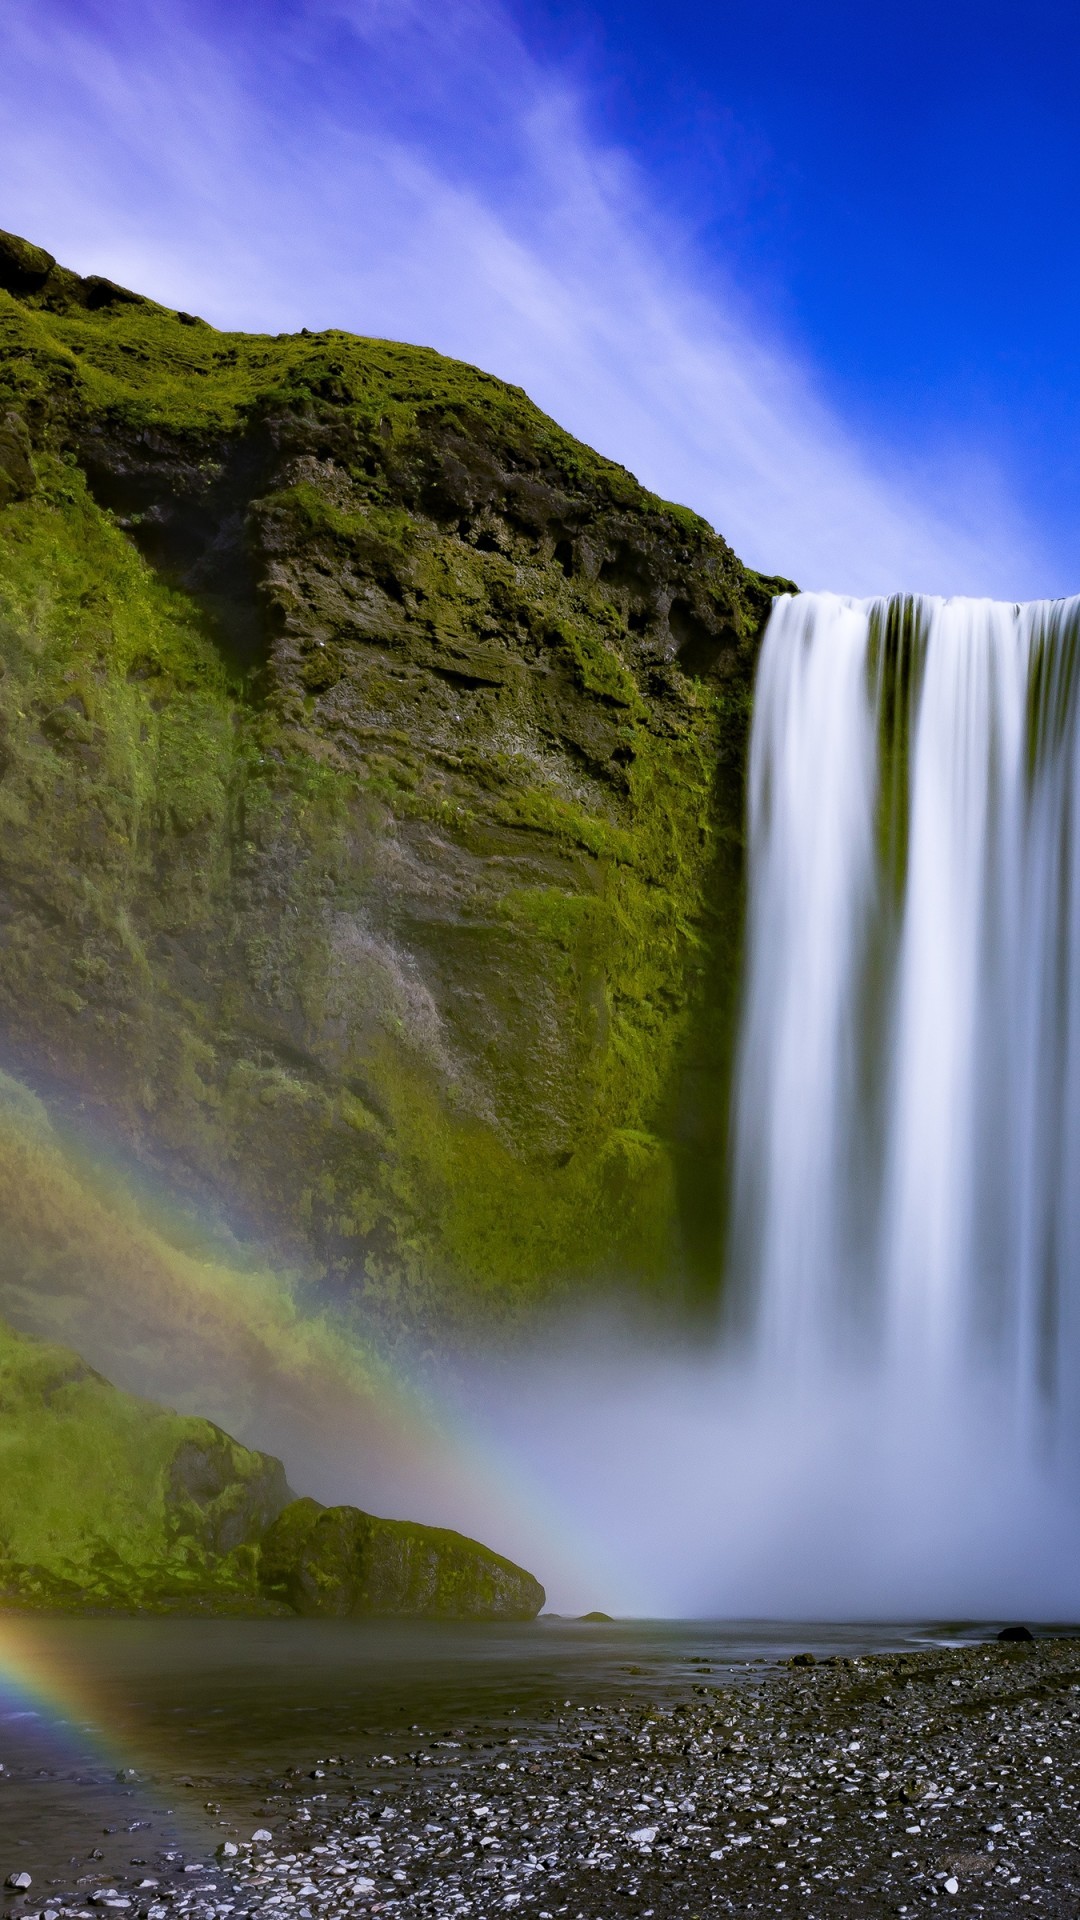 Iceland, Skogafoss, Waterfall, Rainbow - Skógafoss - HD Wallpaper 